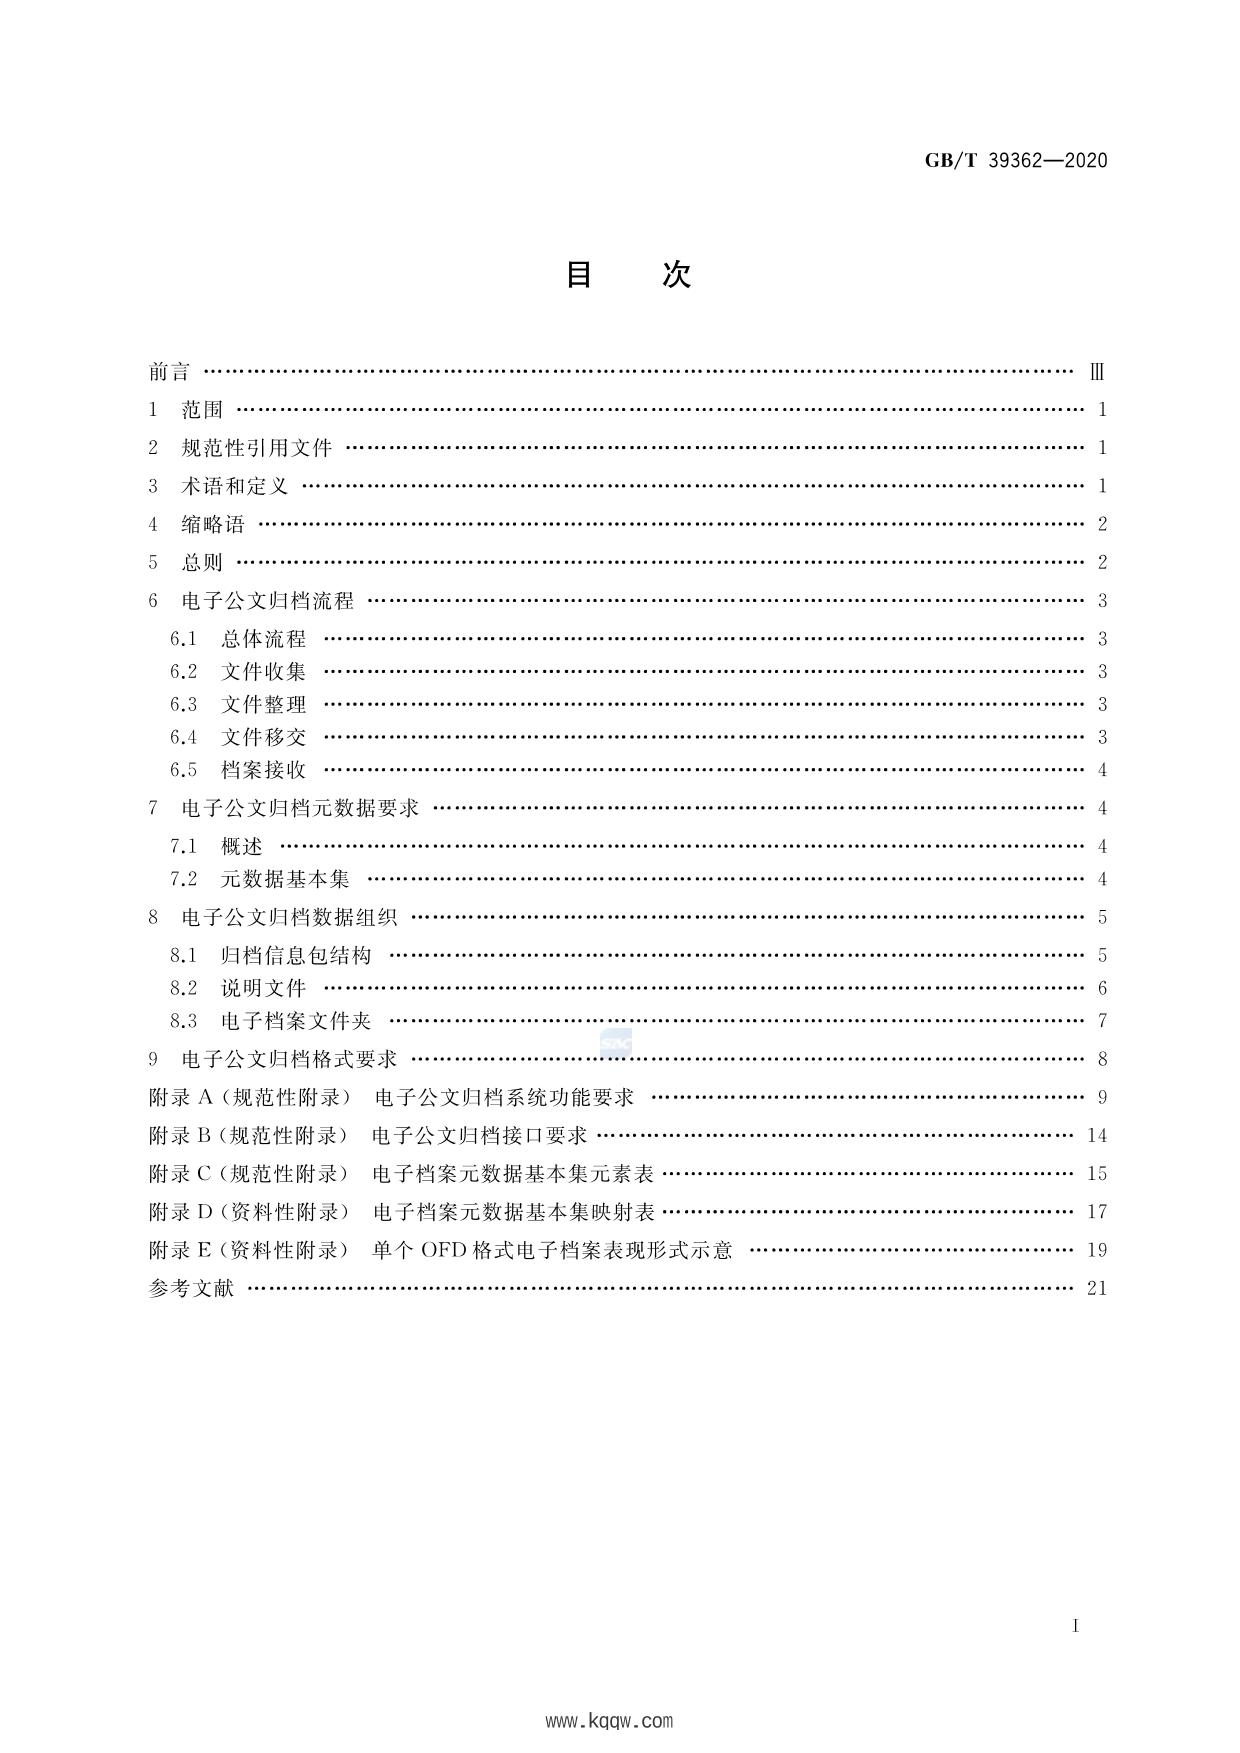 4.5 归档, Page 7 of 9